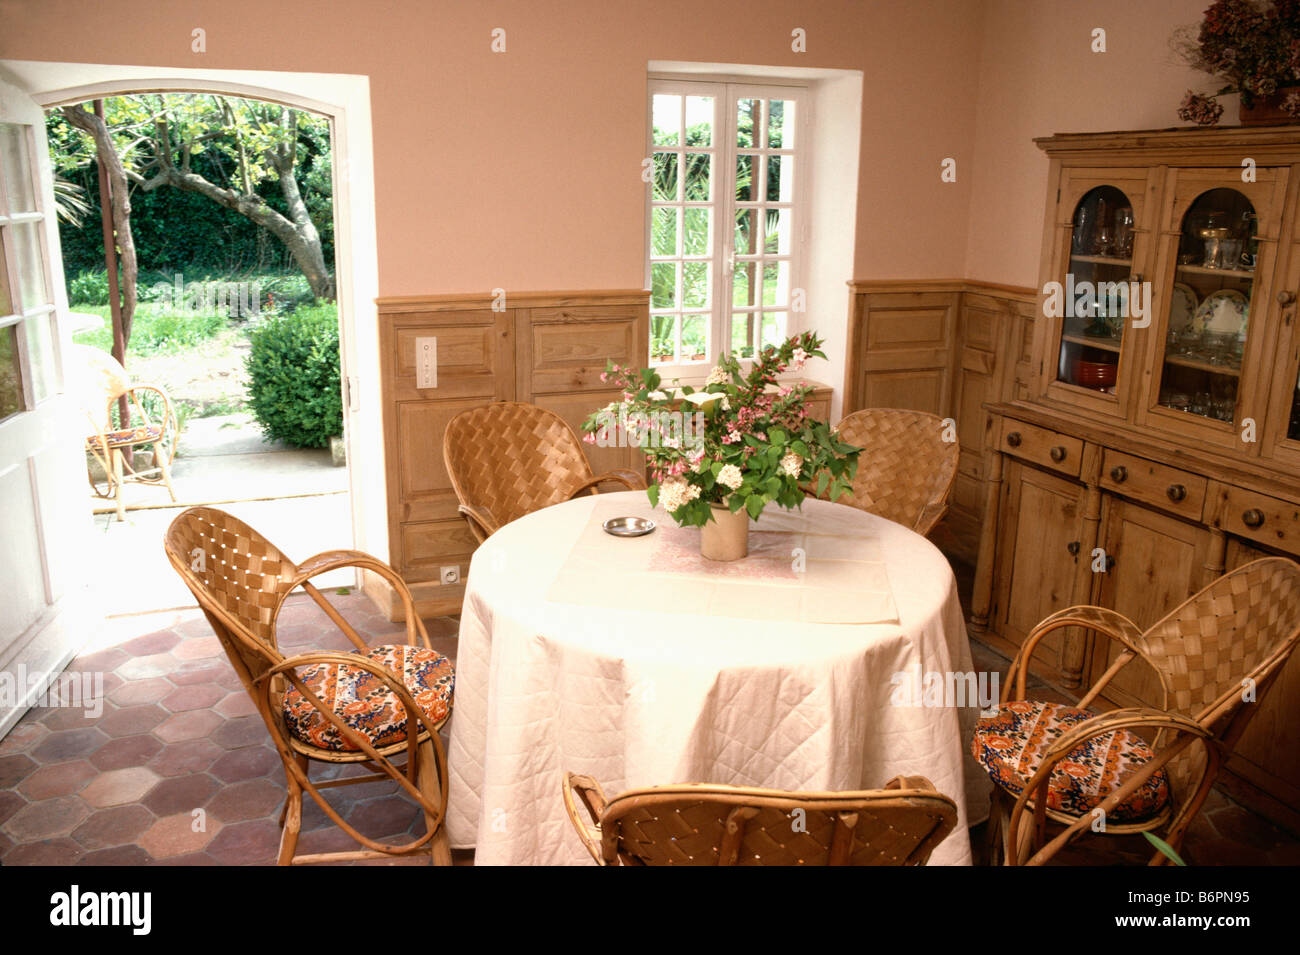 Weiß gesteppt Tuch am runden Tisch mit Rattanstühlen in Pfirsich  französische Land-Ess-Zimmer mit Tür zum Garten Stockfotografie - Alamy